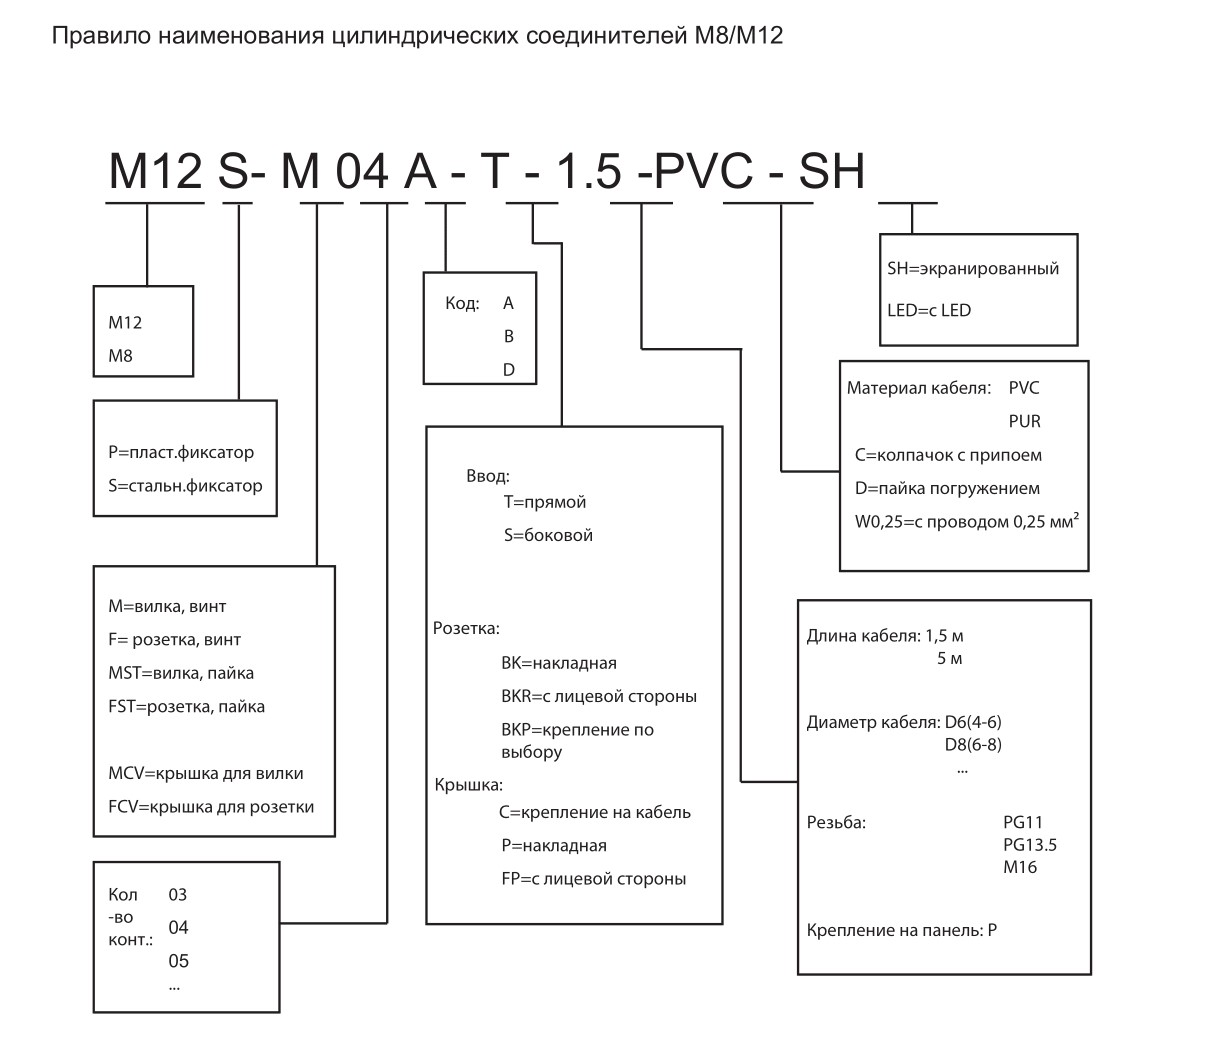 Цилиндрический соединитель-вилка/розетка (каб. сборка) M12-M04D-T/F04D-T-1.0-PUR-PFN 1630040014011: Структура обозначения